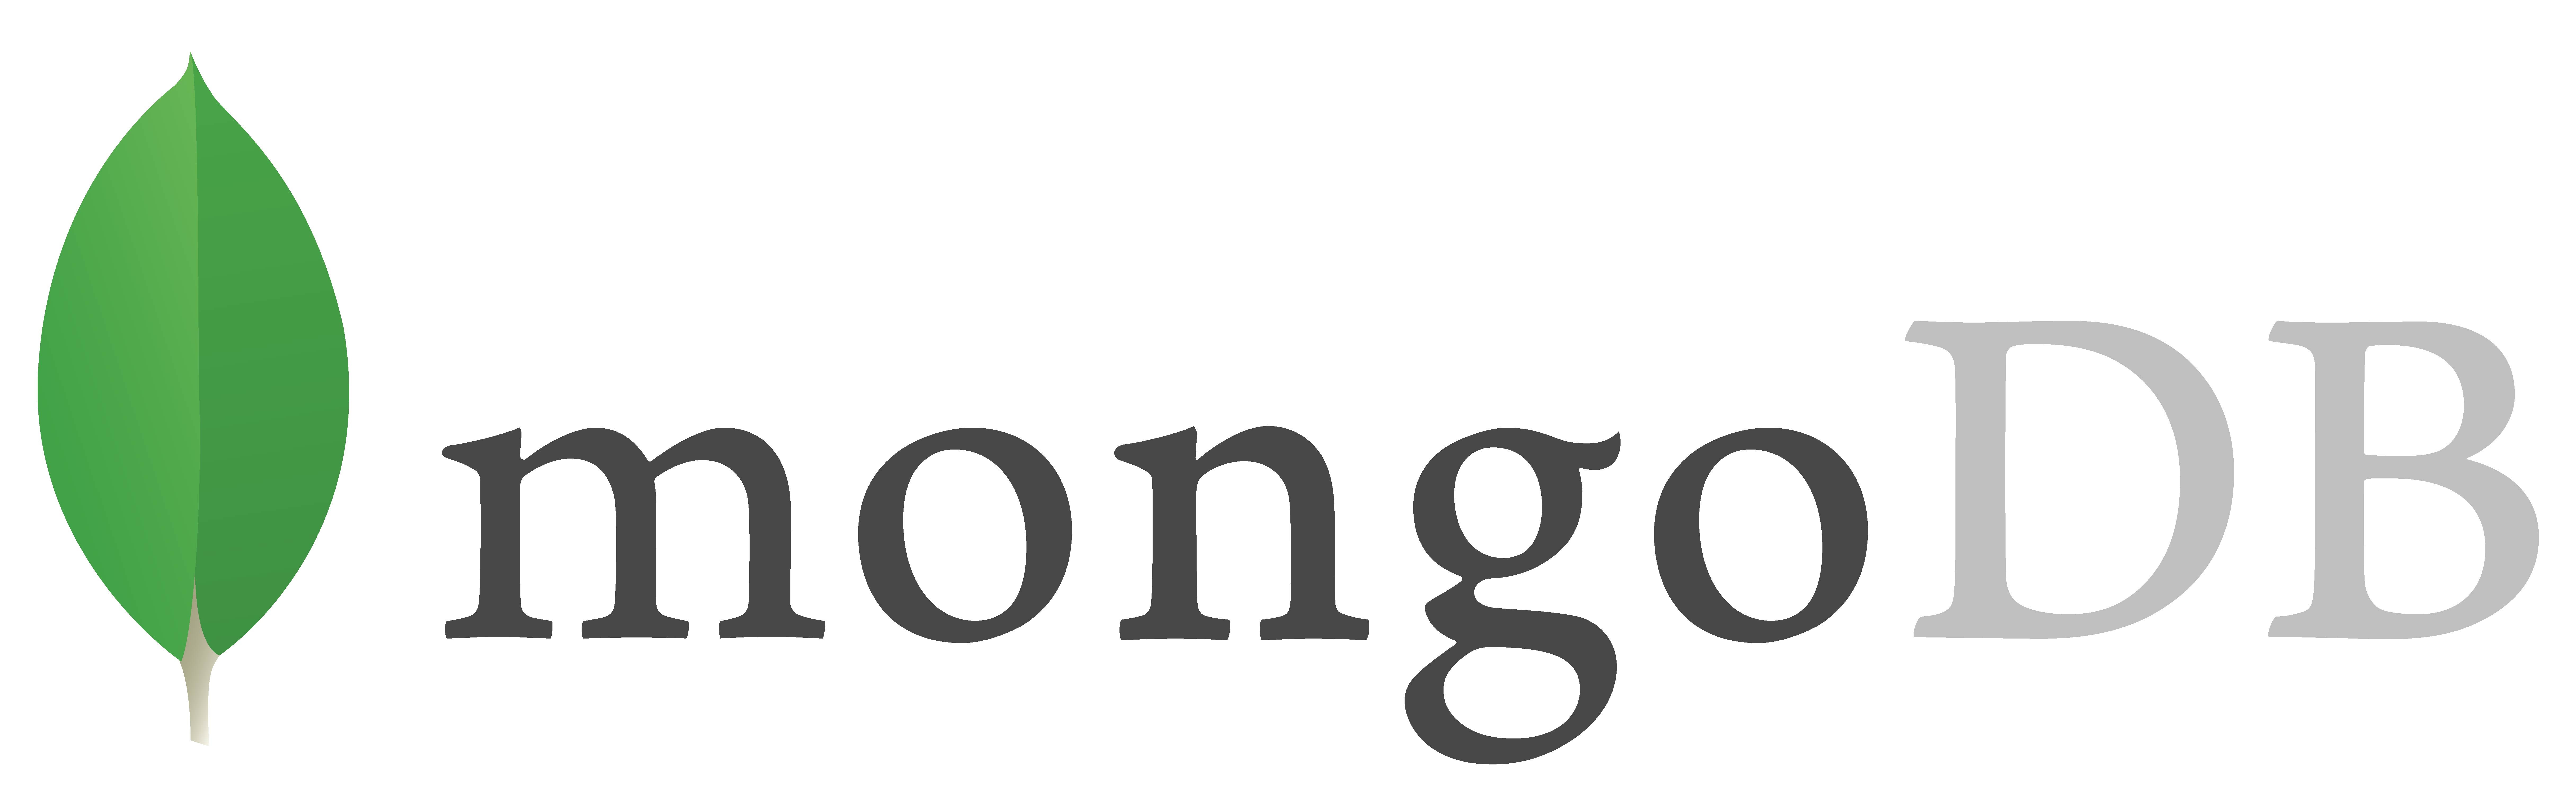 MongoDB_Gray_Logo_FullColor_RGB-01.jpg